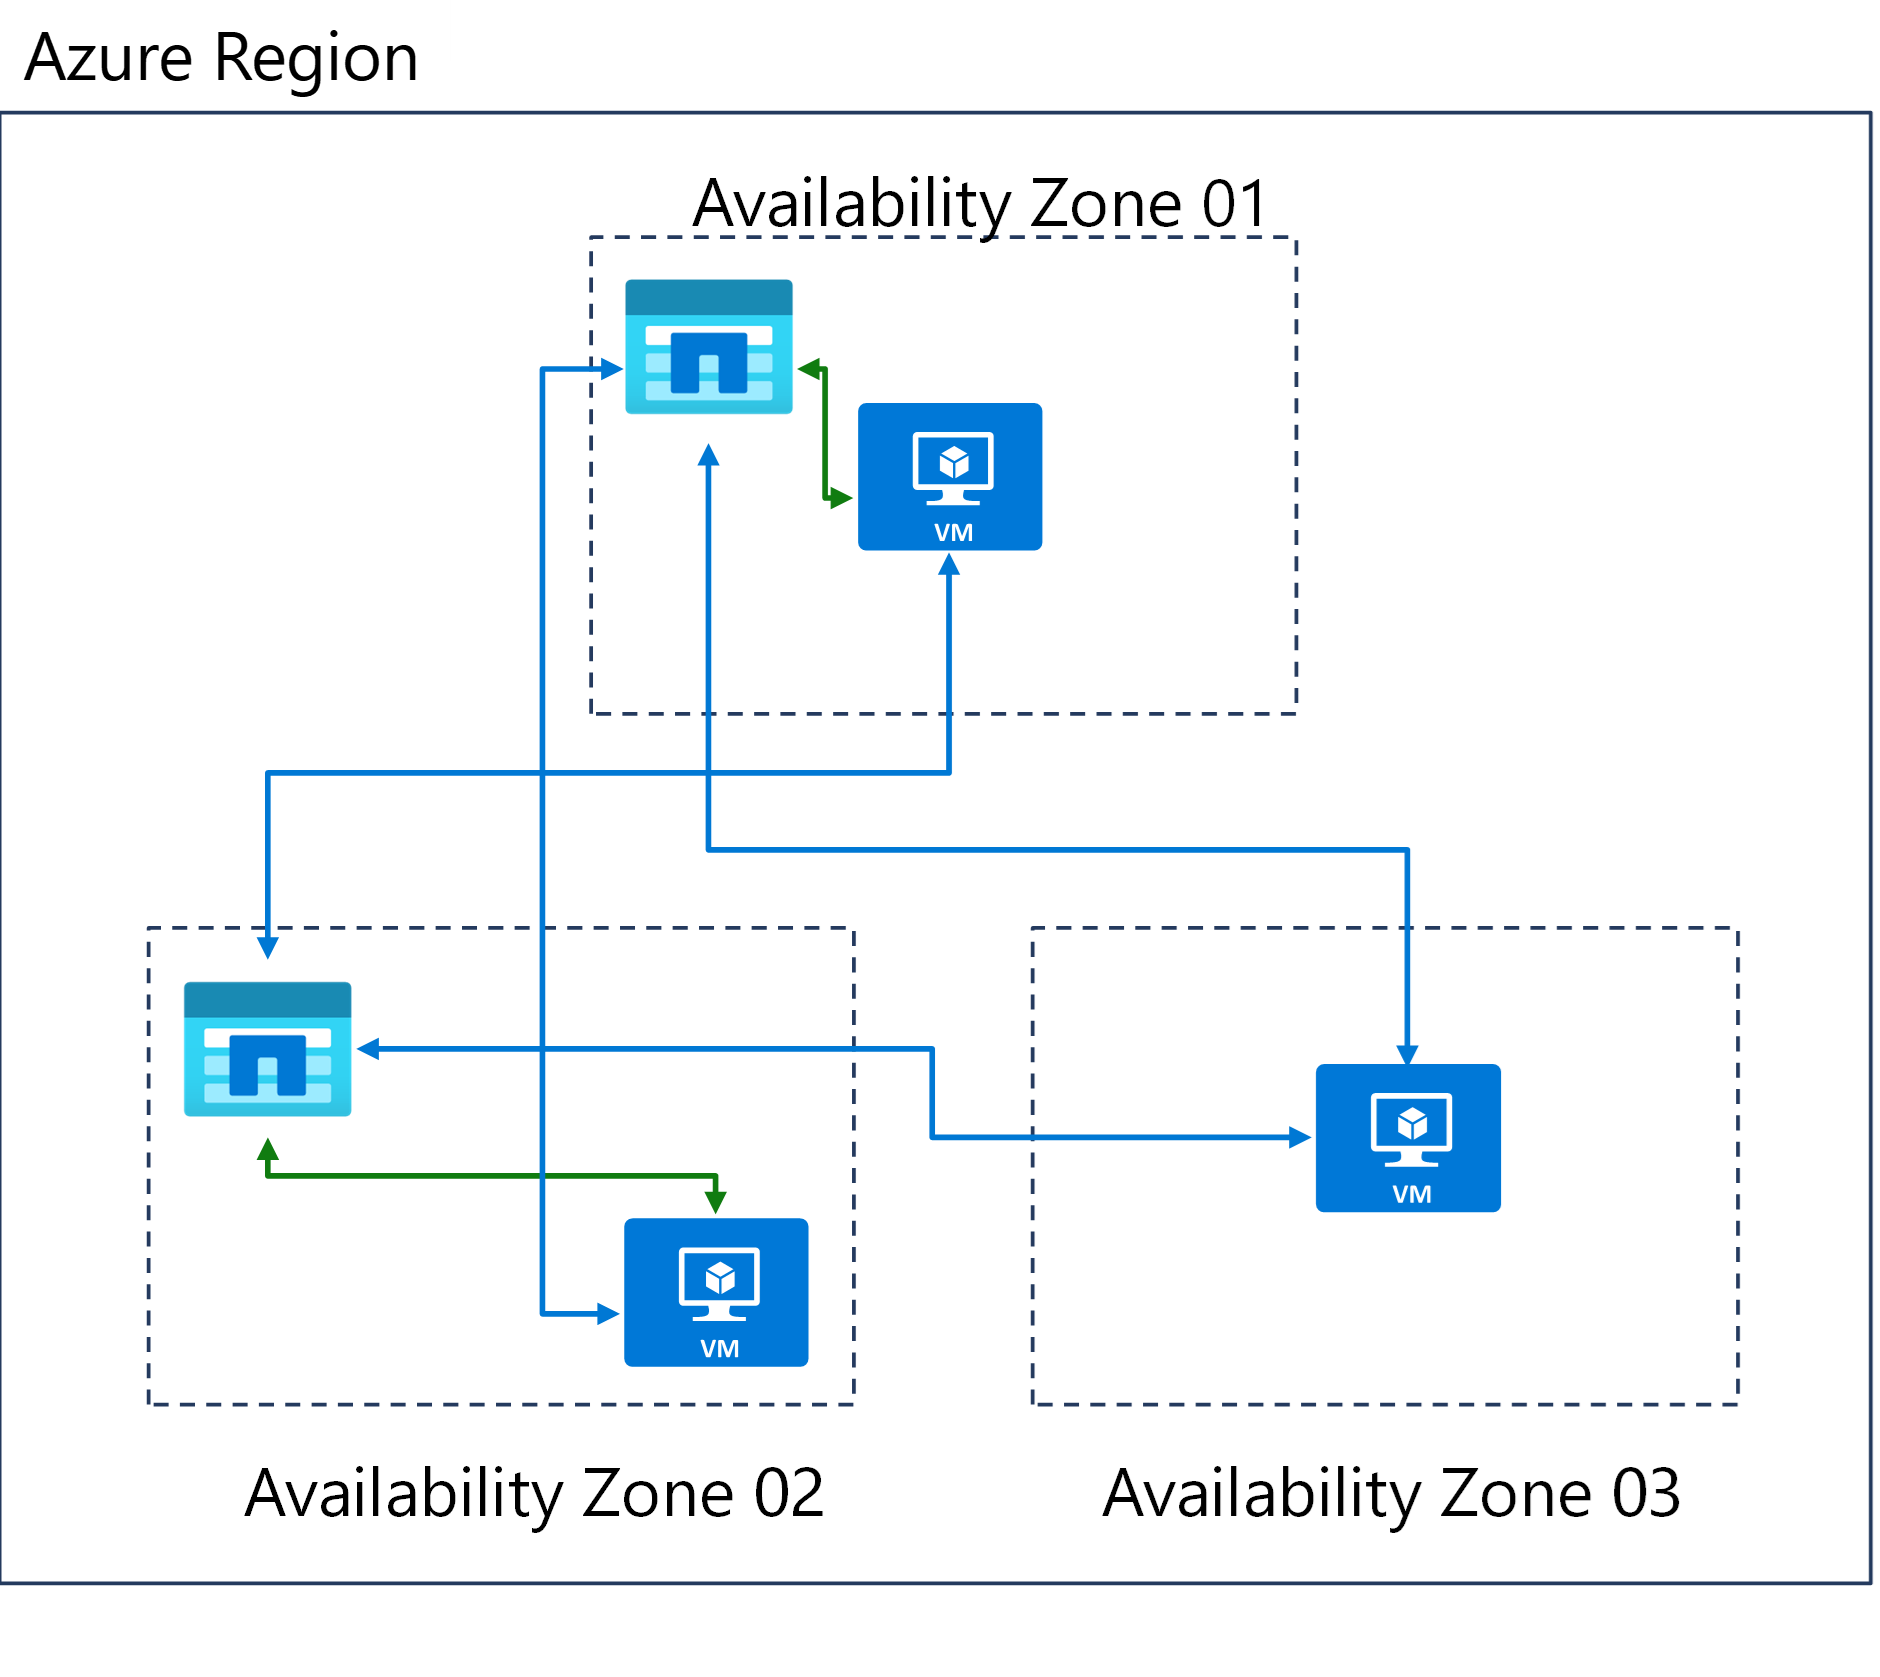 Diagramme de trois zones de disponibilité dans une région Azure.